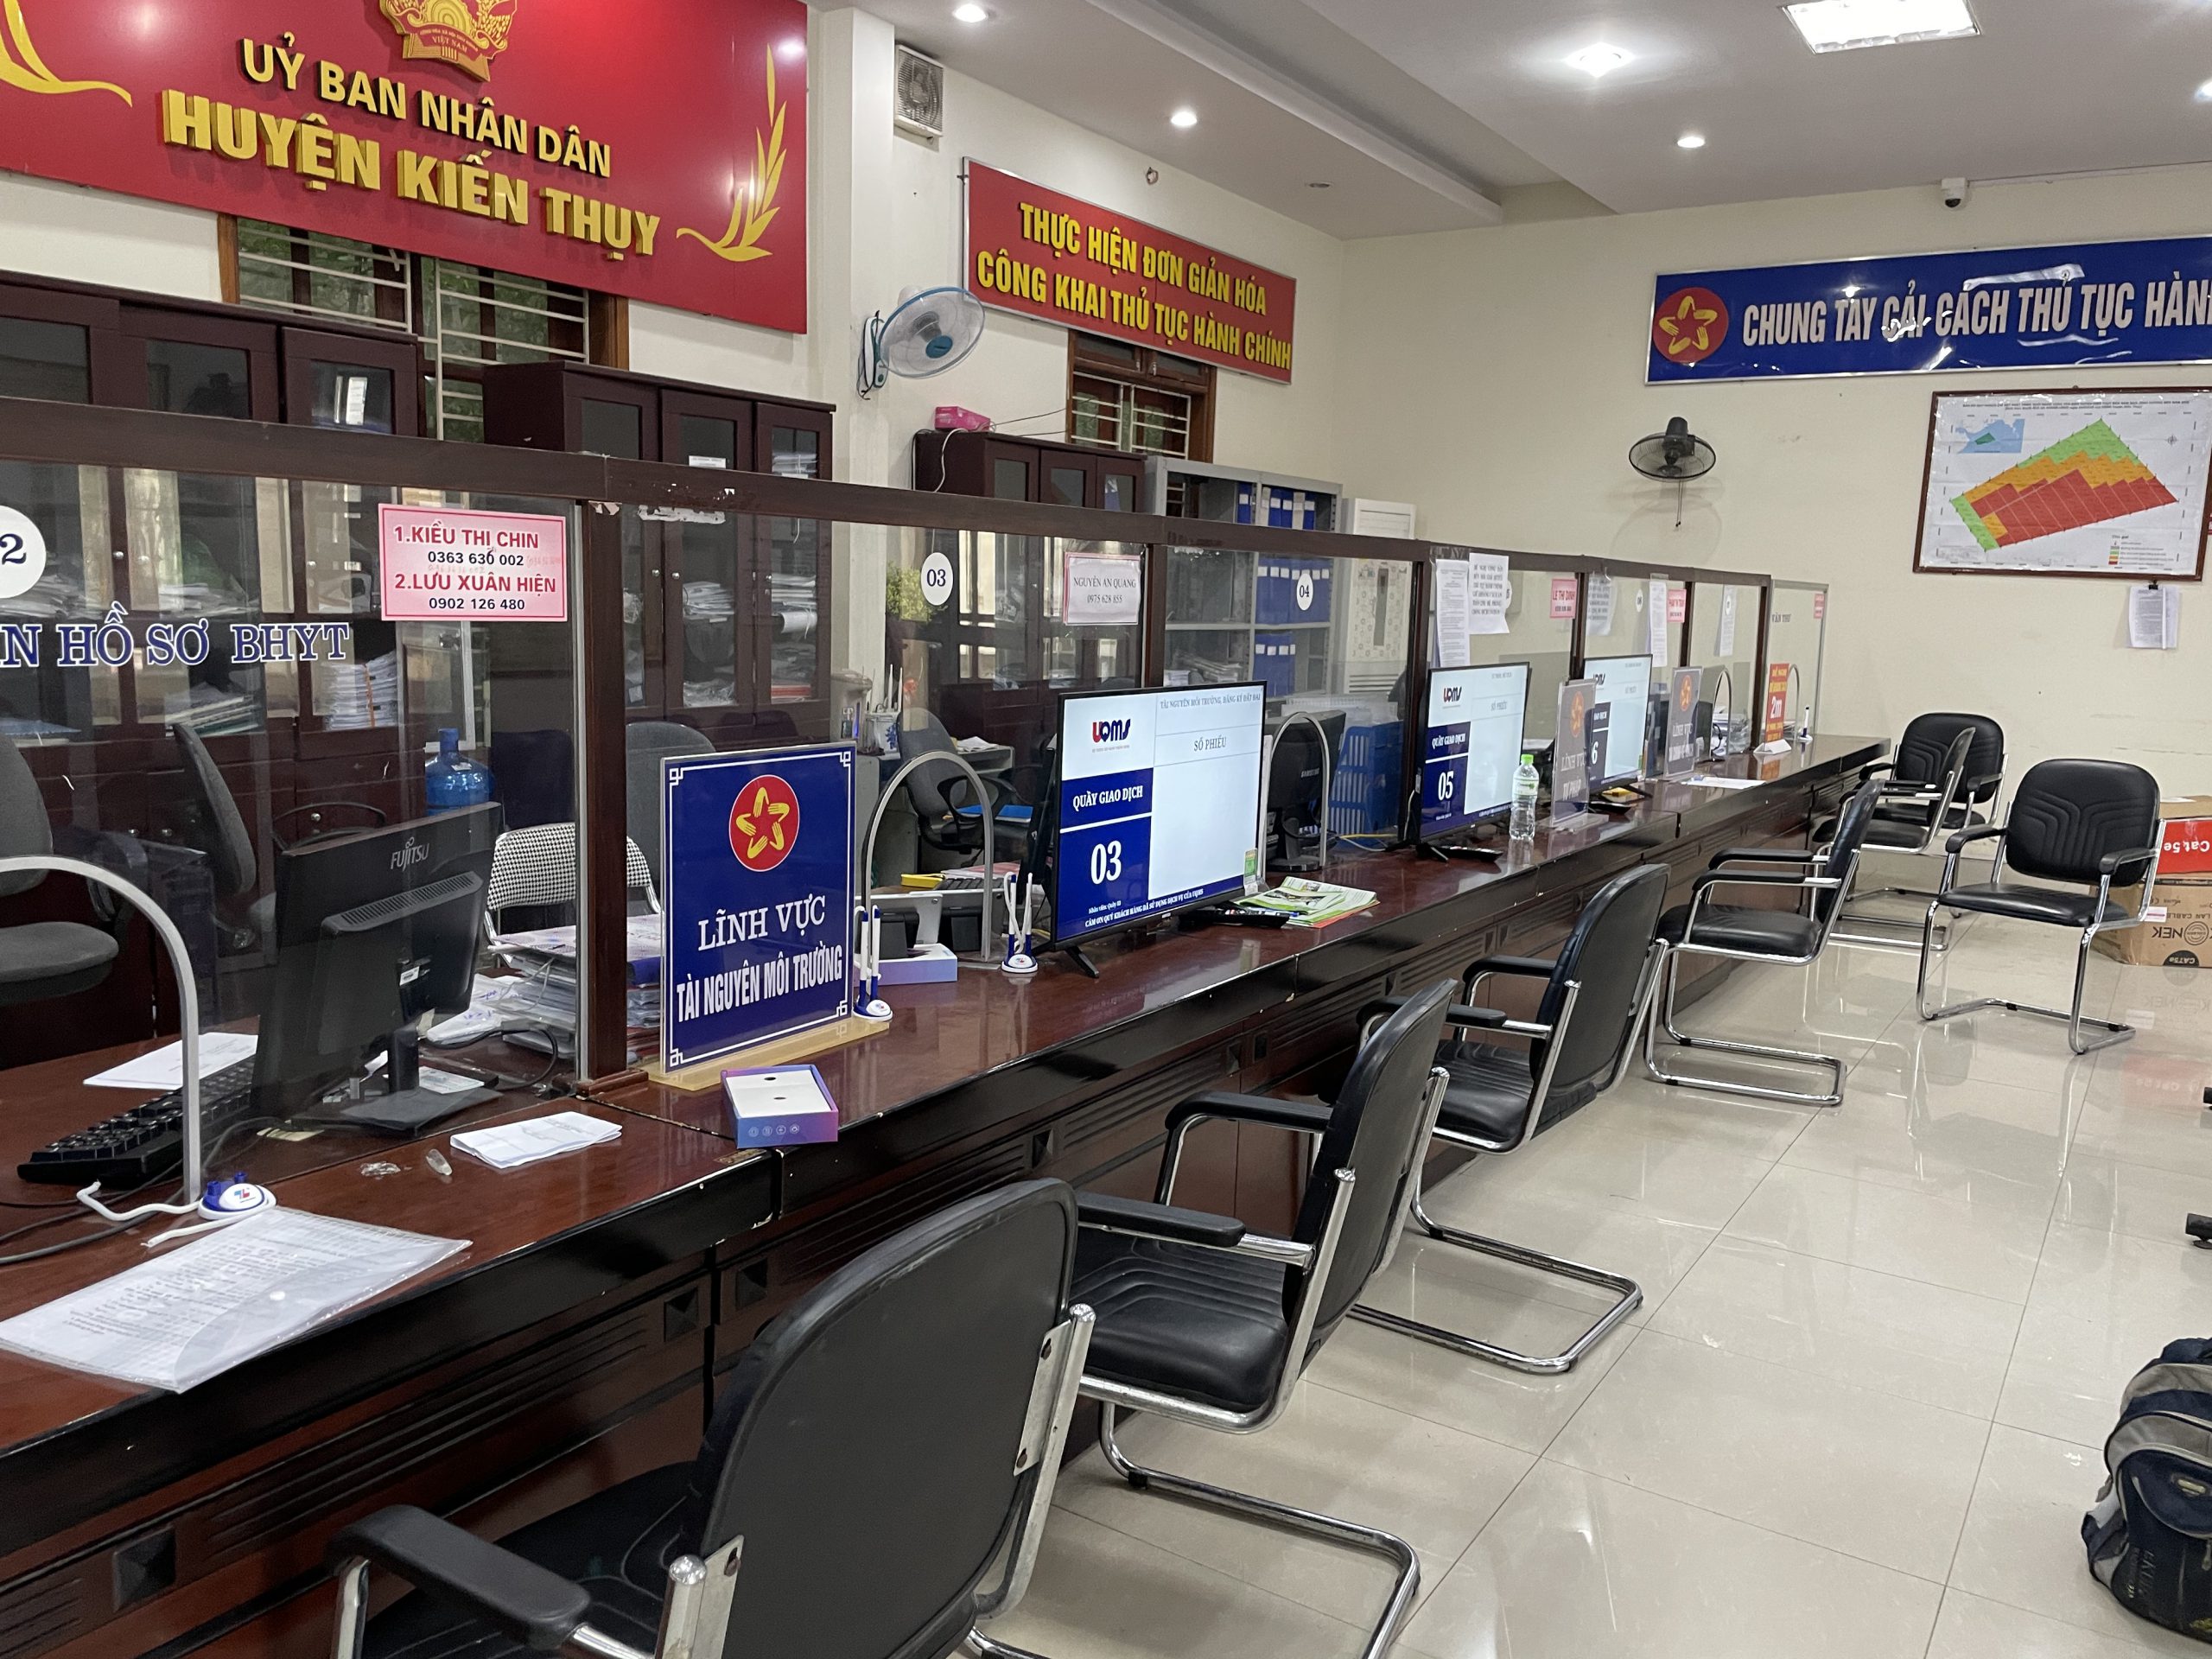 Hệ thống lấy số tự động uQMS huyện Kiến Thuỵ, Hải Phòng